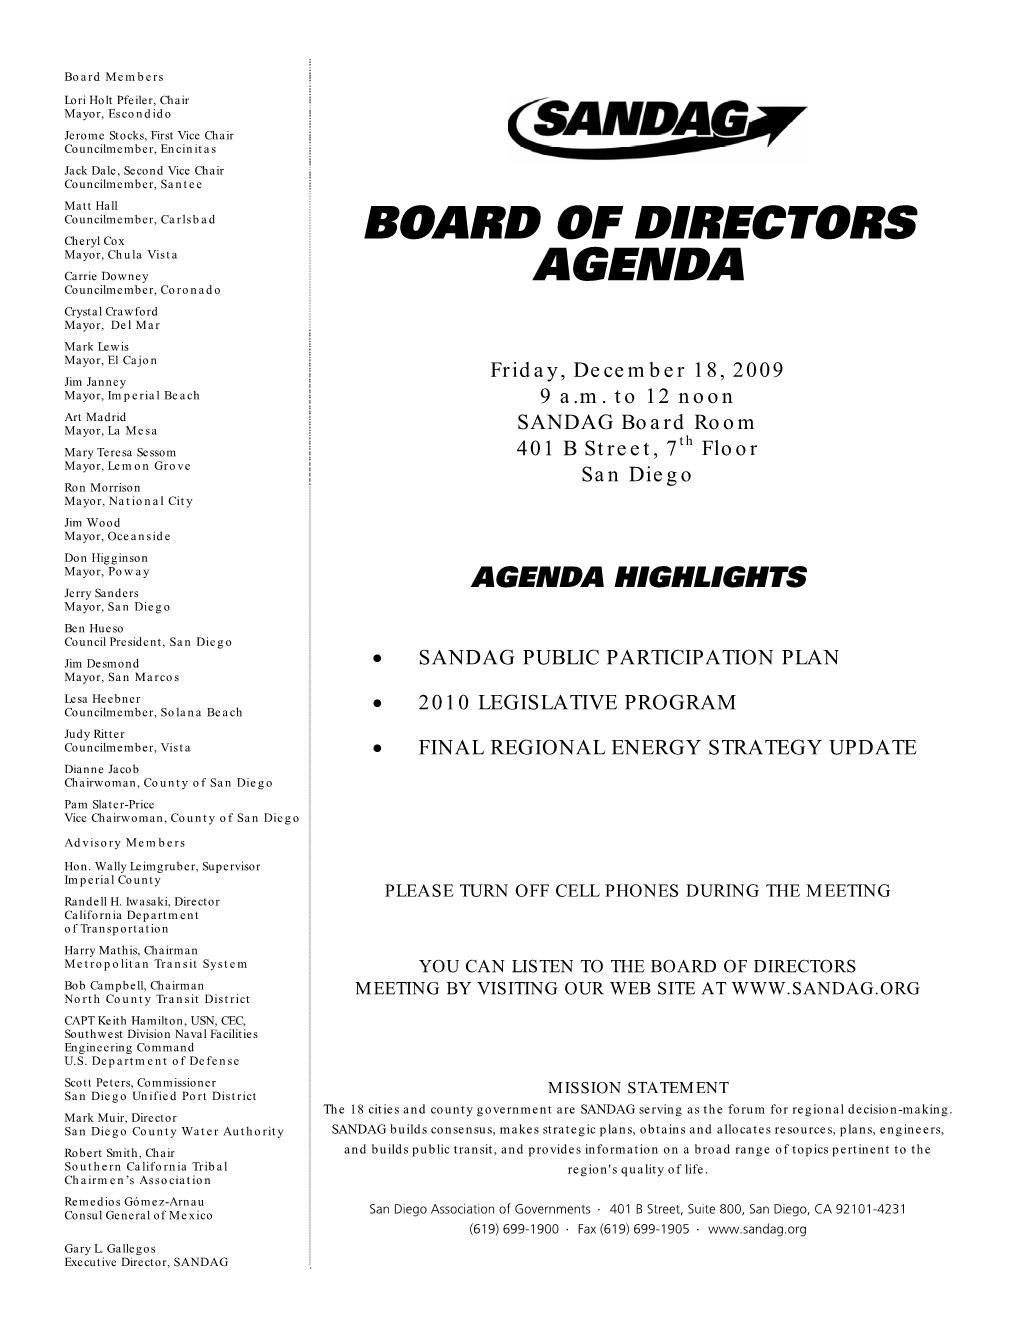 Meeting Agenda for December 18, 2009